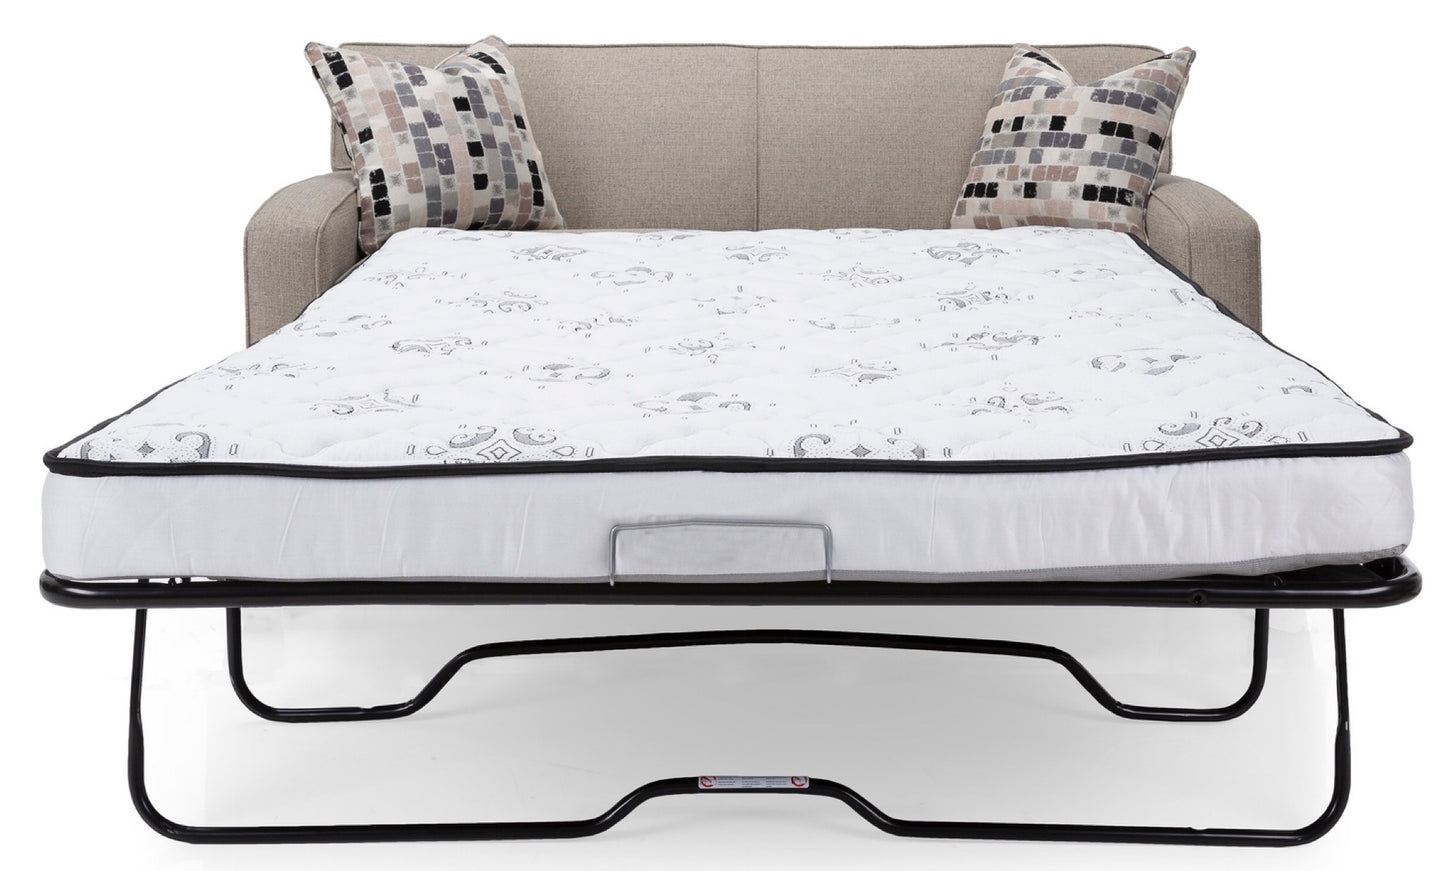 2401 - Queen Sofa Bed